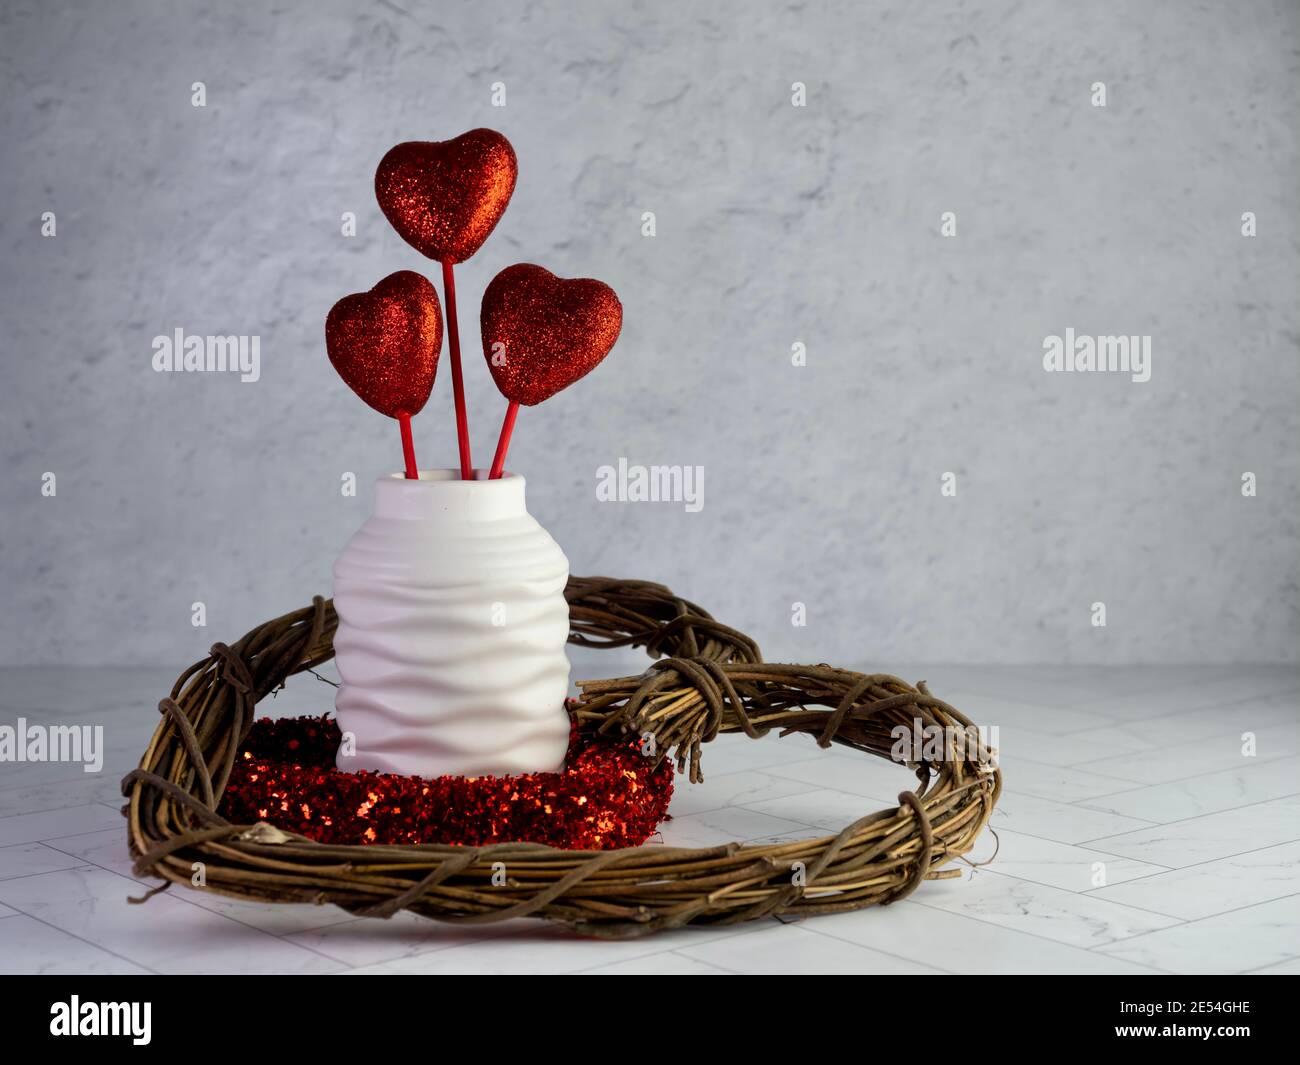 Decorazioni per San Valentino, una corona di cuore in legno, una corona di  cuore rossa e scintillante e un vaso bianco pieno di 3 cuori rossi  scintillanti che si attaccano su un